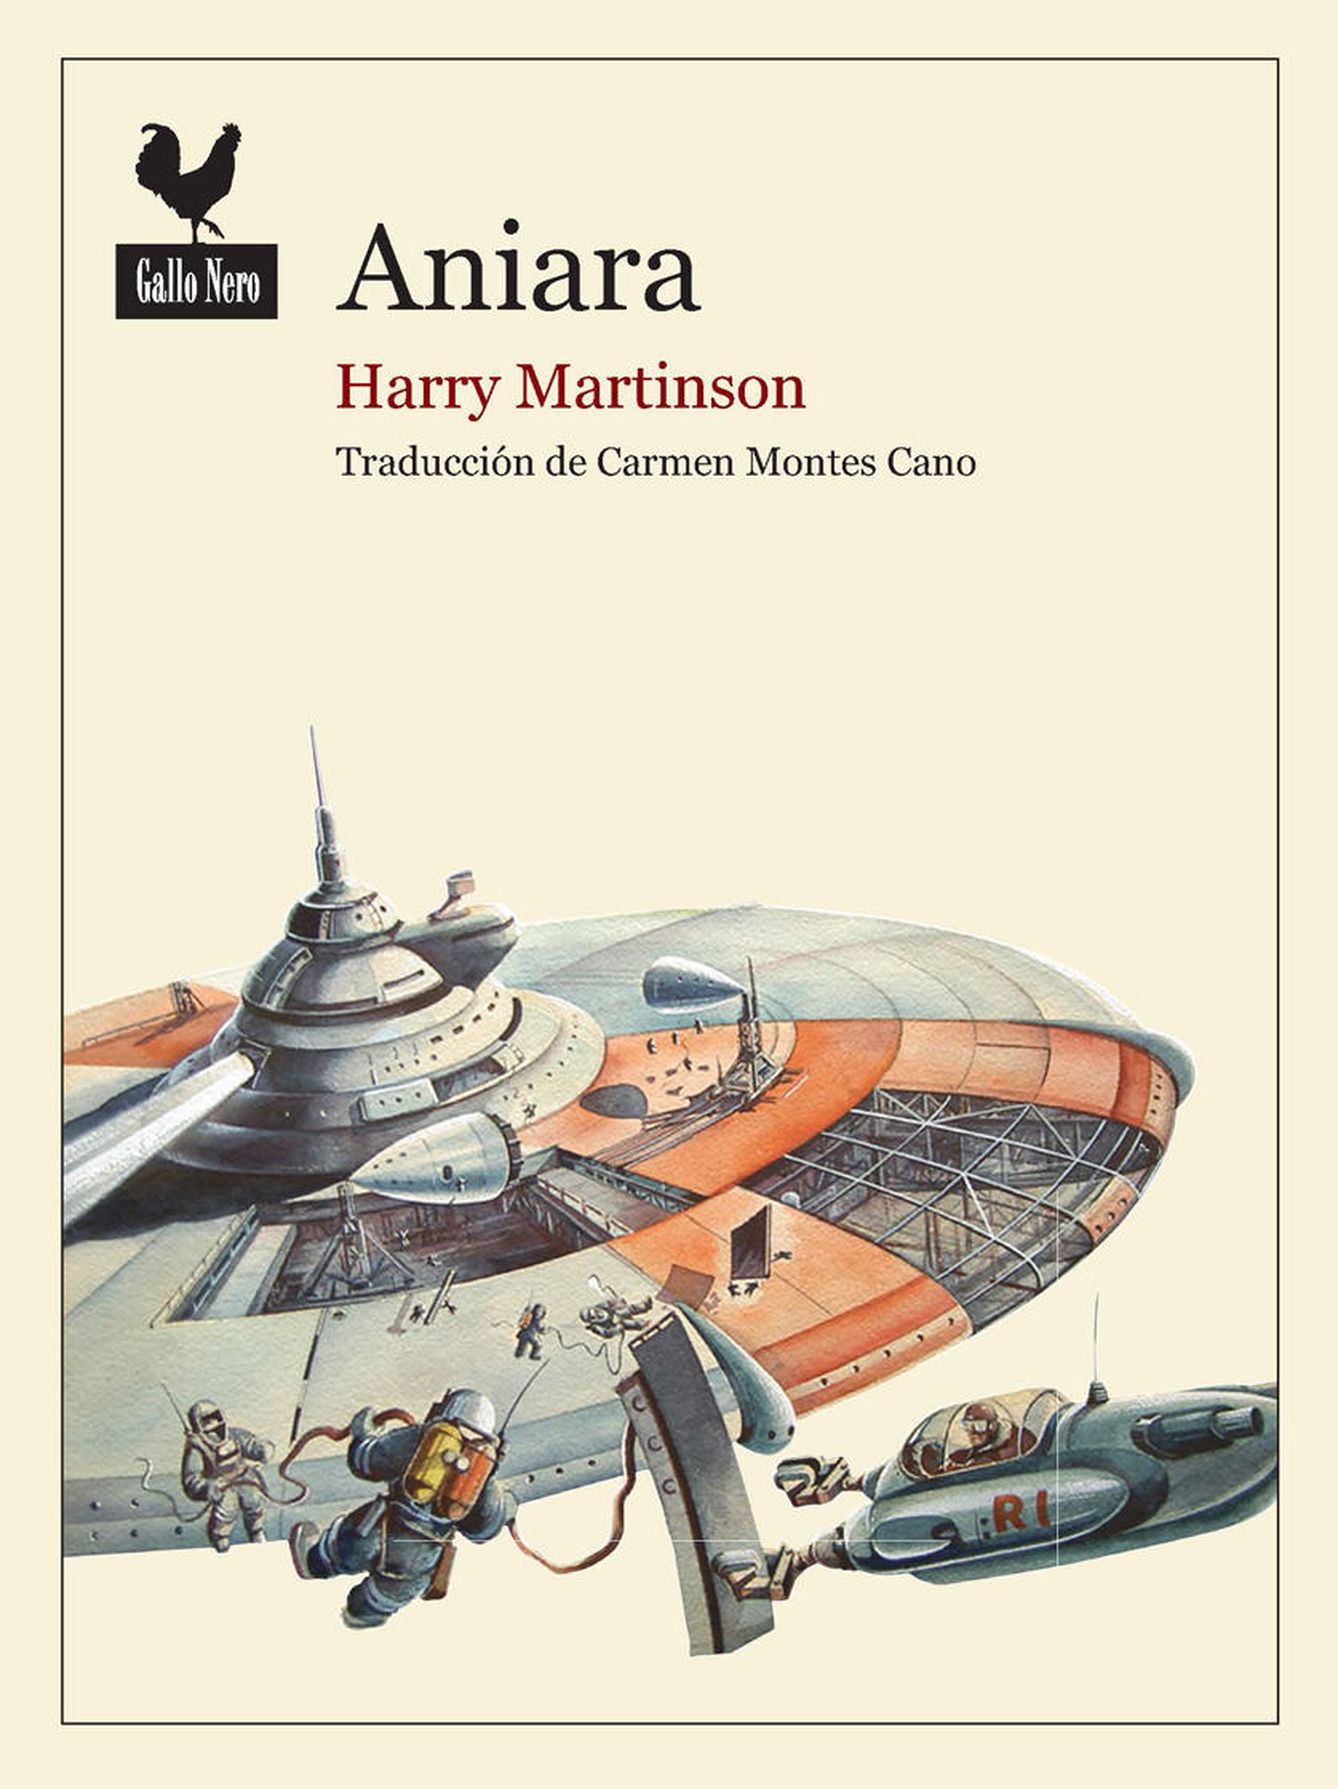 'Aniara', publicado por Gallo Nero